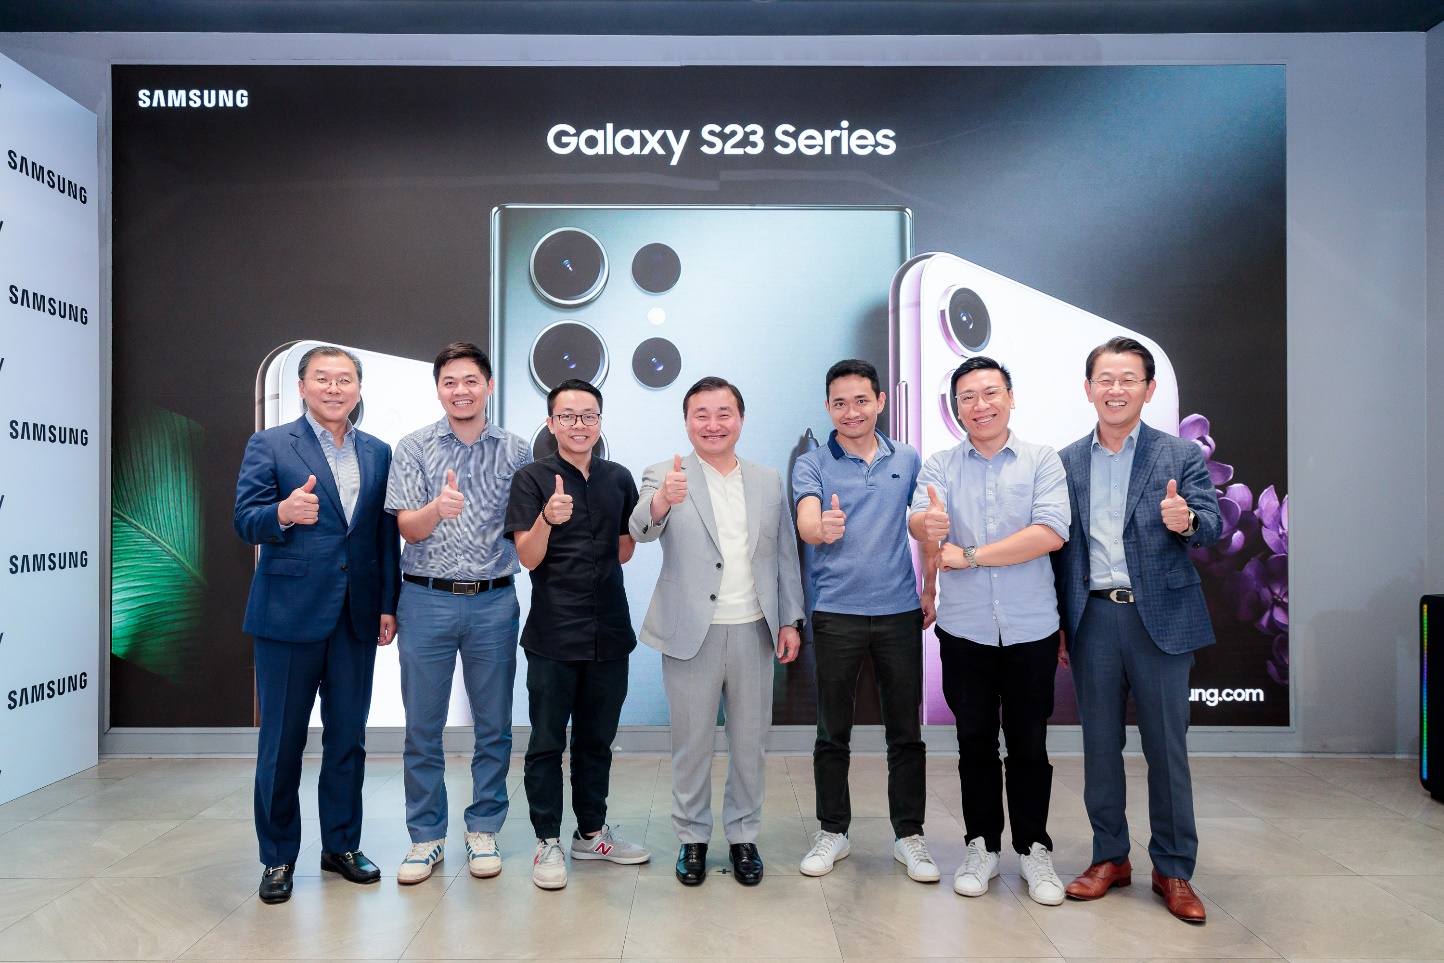 Chủ tịch Samsung: “50% thị phần smartphone Việt là các máy cao cấp” - Ảnh 1.